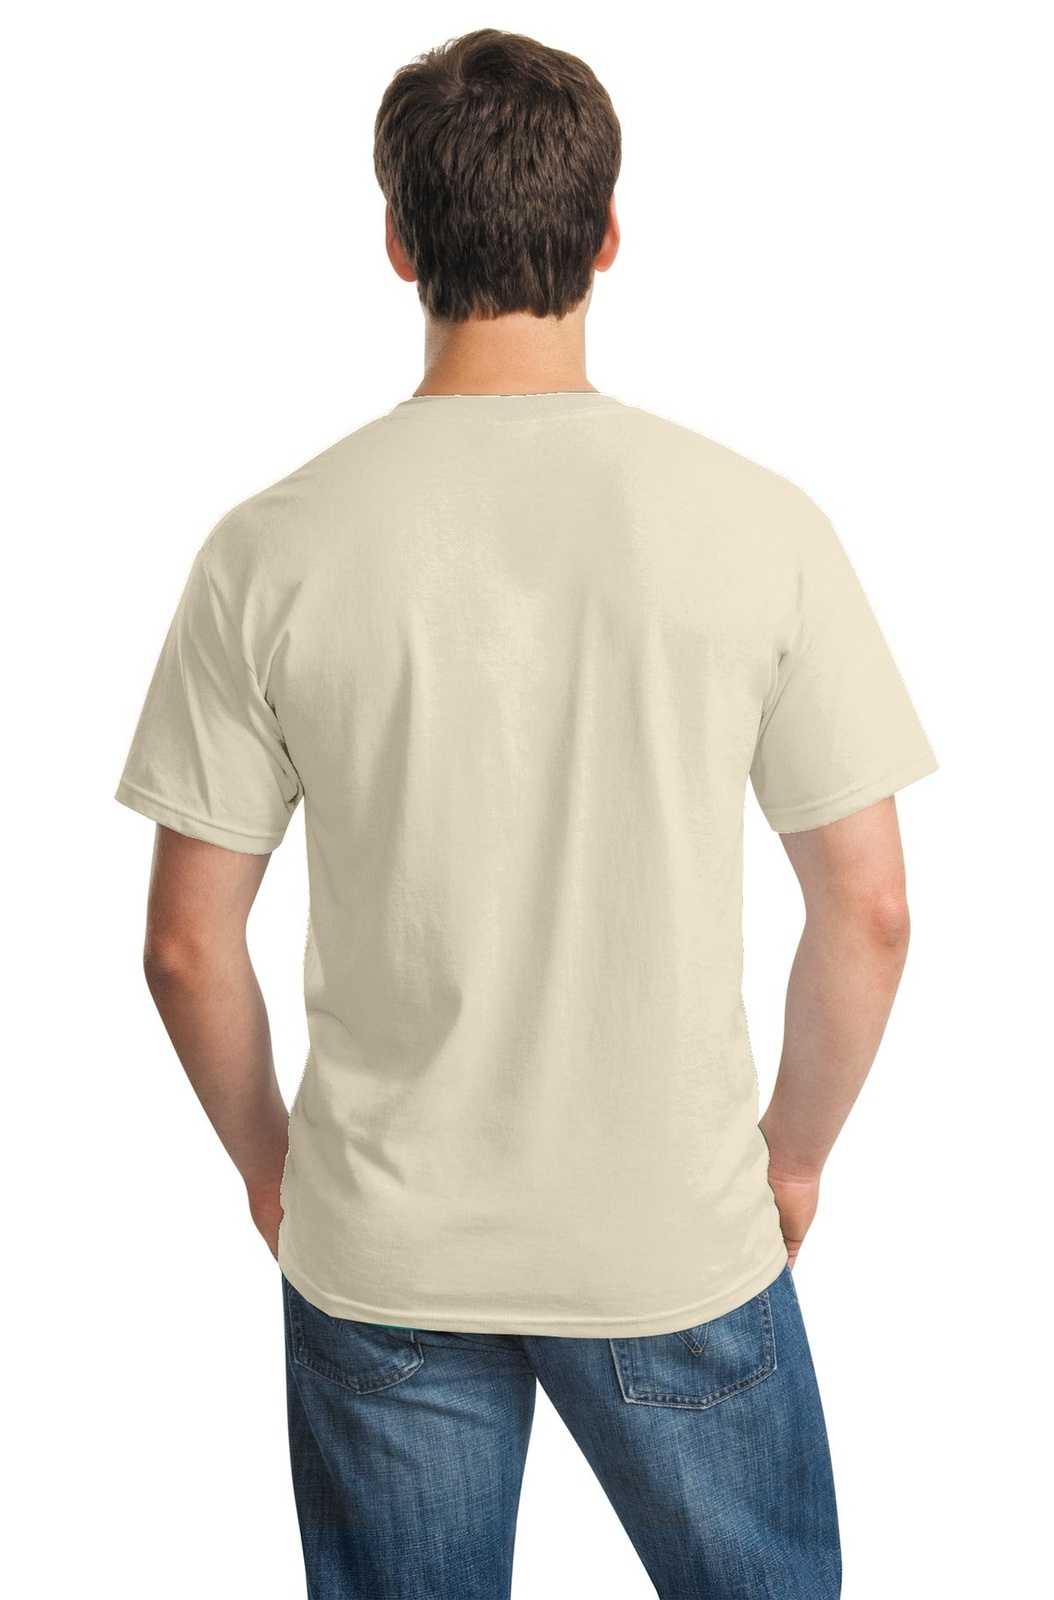 Gildan 5000 Heavy Cotton 100% Cotton T-Shirt - Sand - HIT a Double